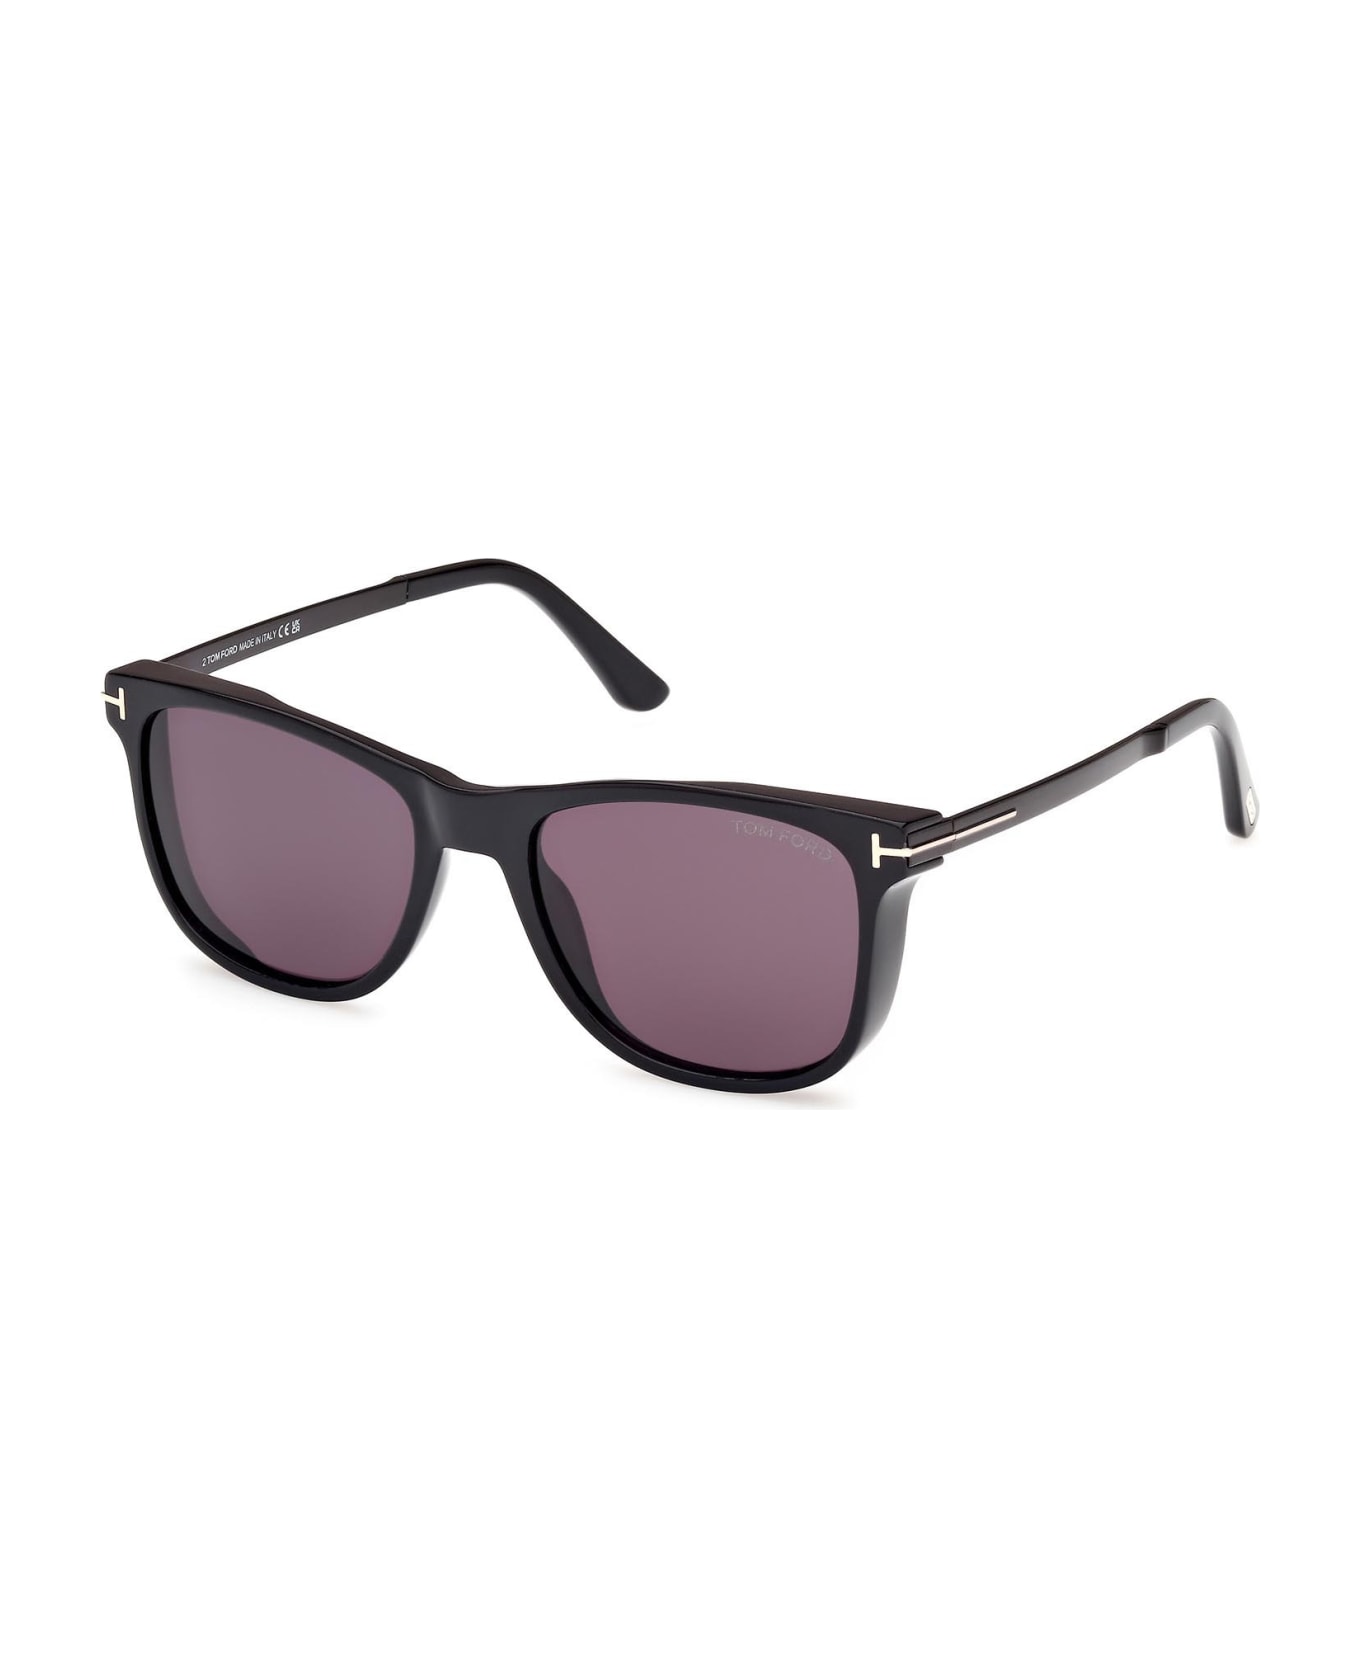 Tom Ford Eyewear Sunglasses - Nero/Grigio サングラス